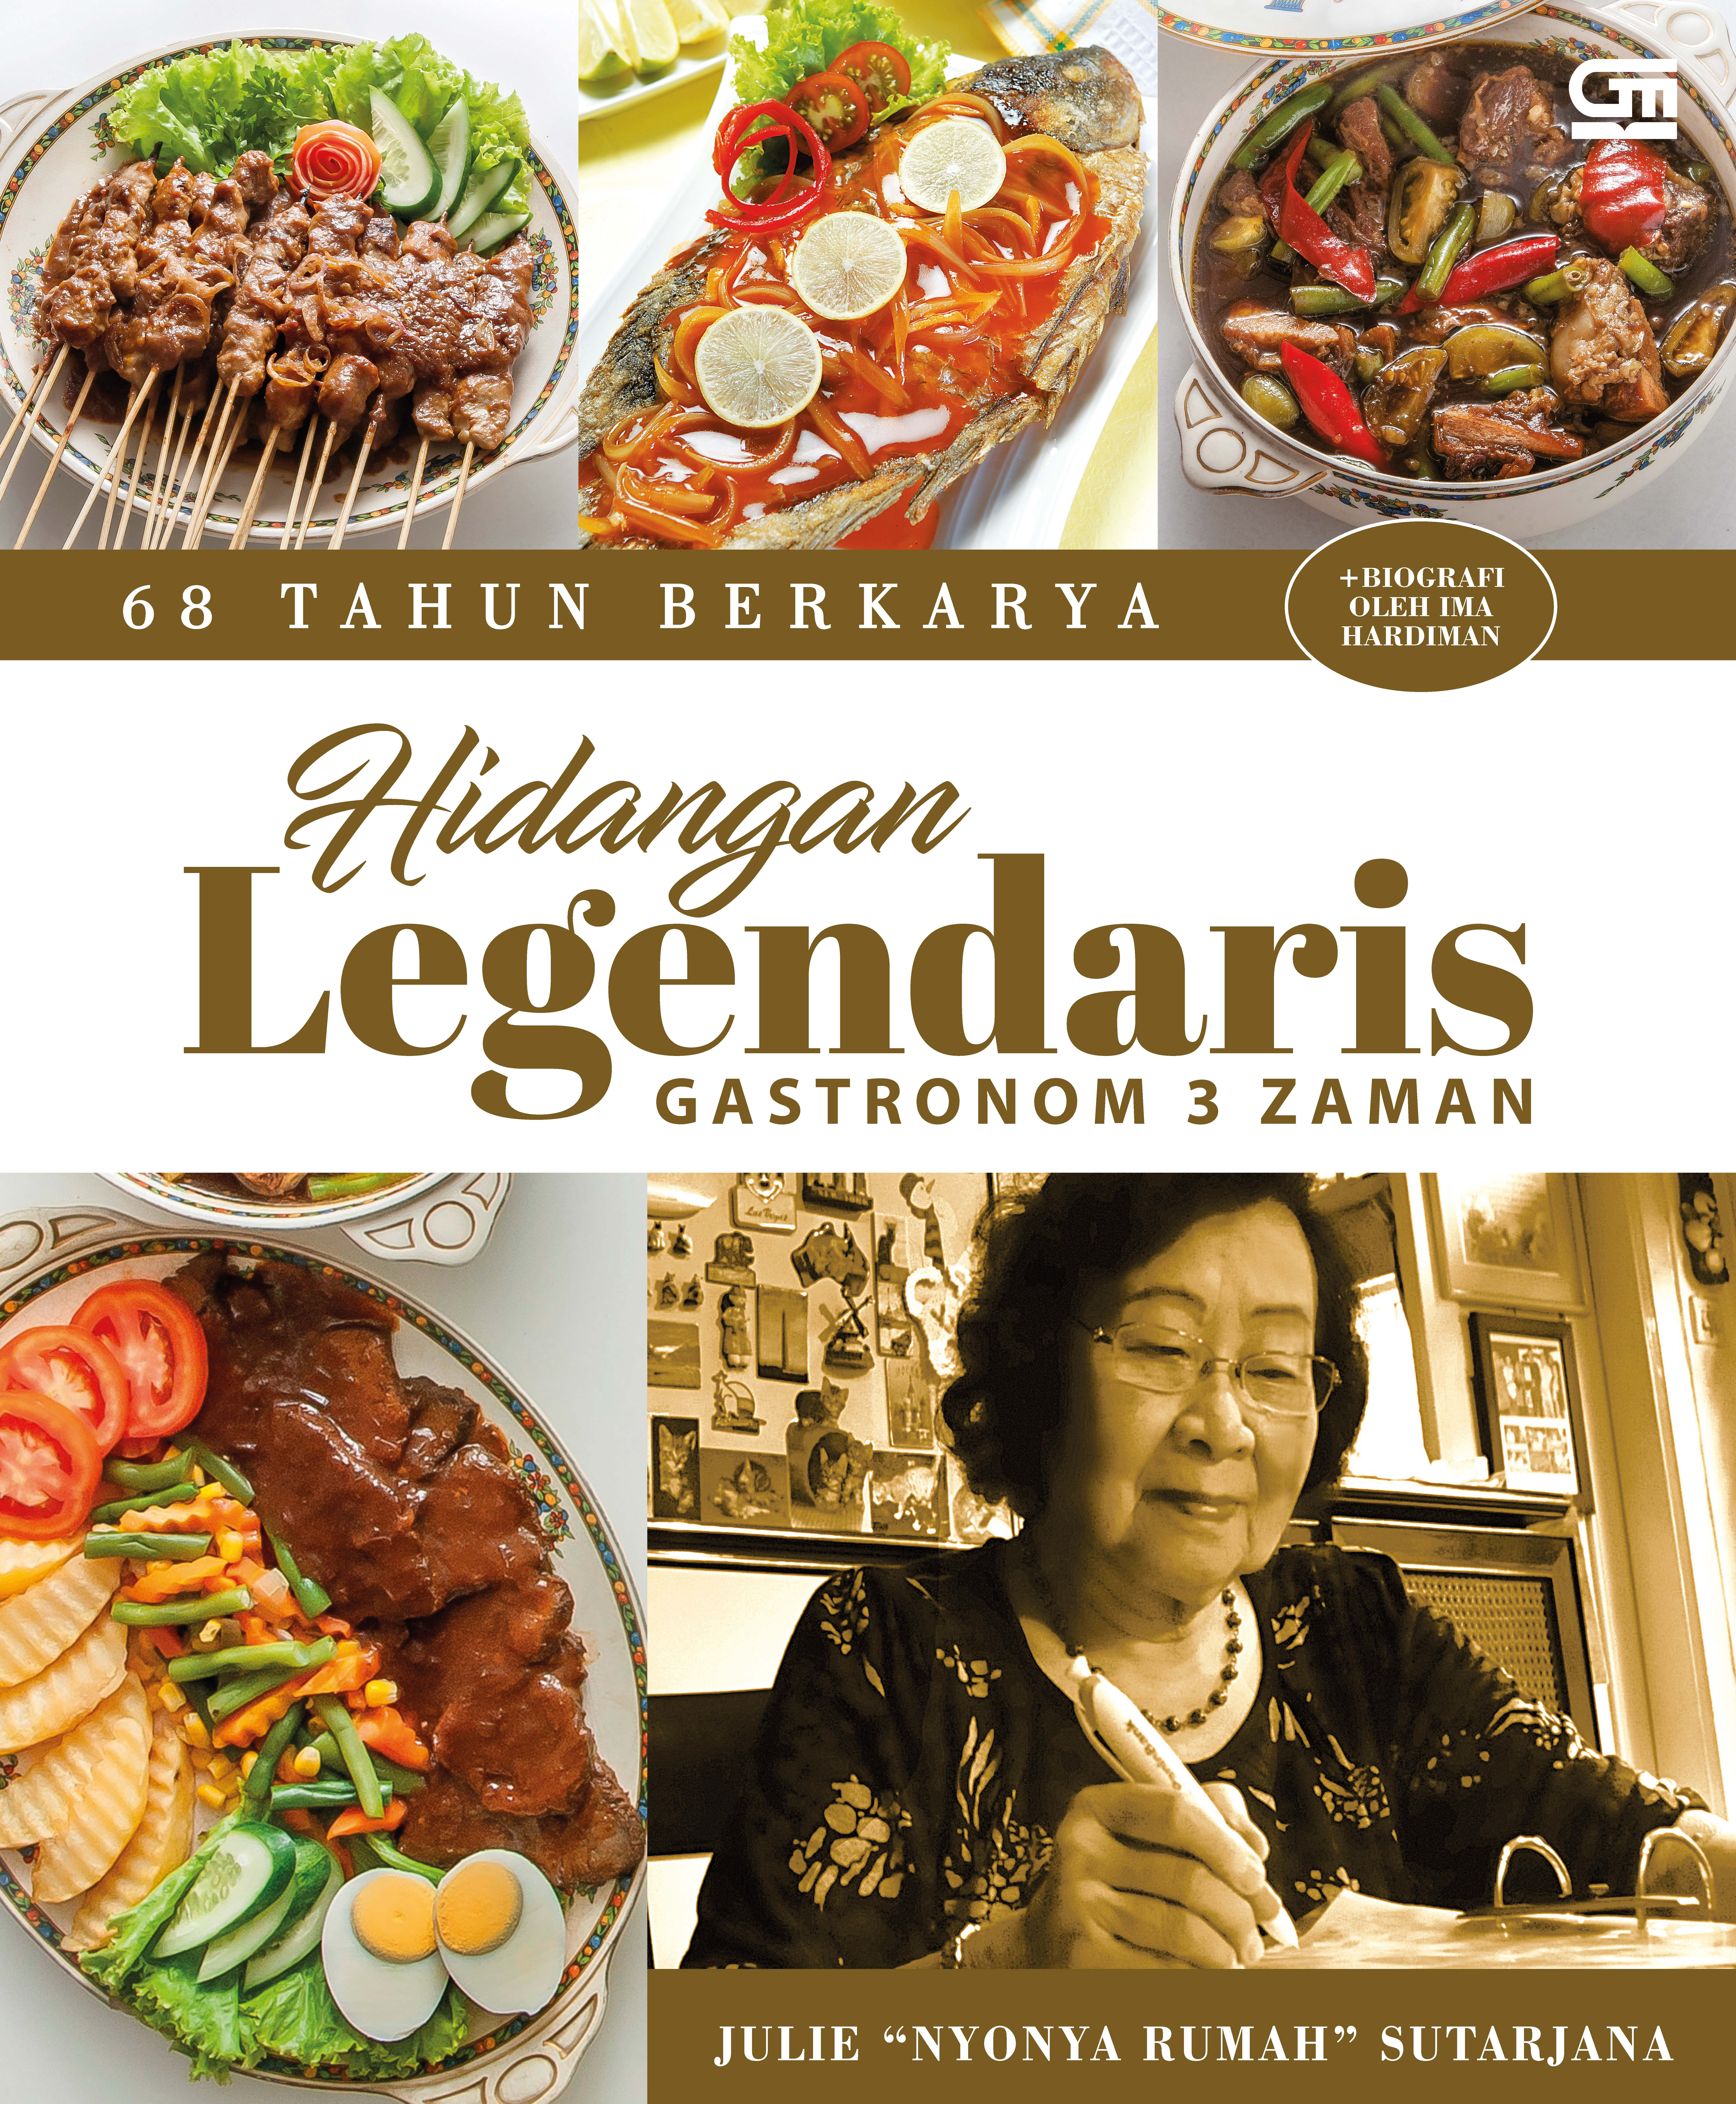 68 Tahun Berkarya: 250 Resep Hidangan Legendaris Gastronom 3 Zaman